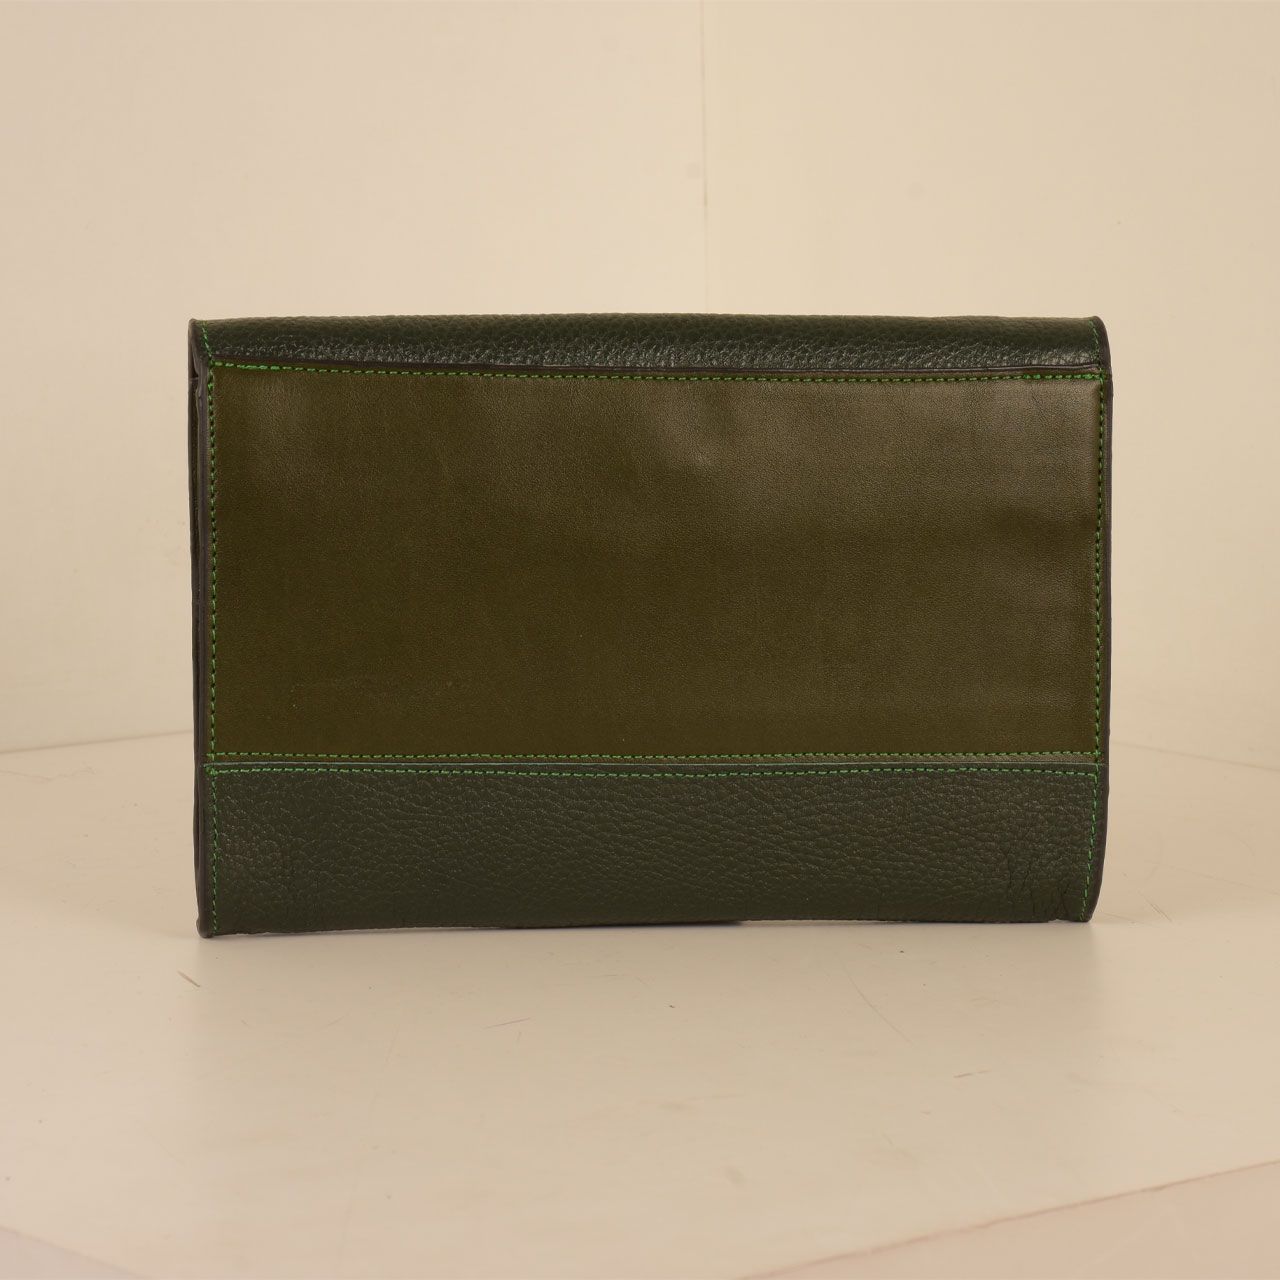 کیف دوشی زنانه پارینه چرم مدل PLV188-12-1510 -  - 47